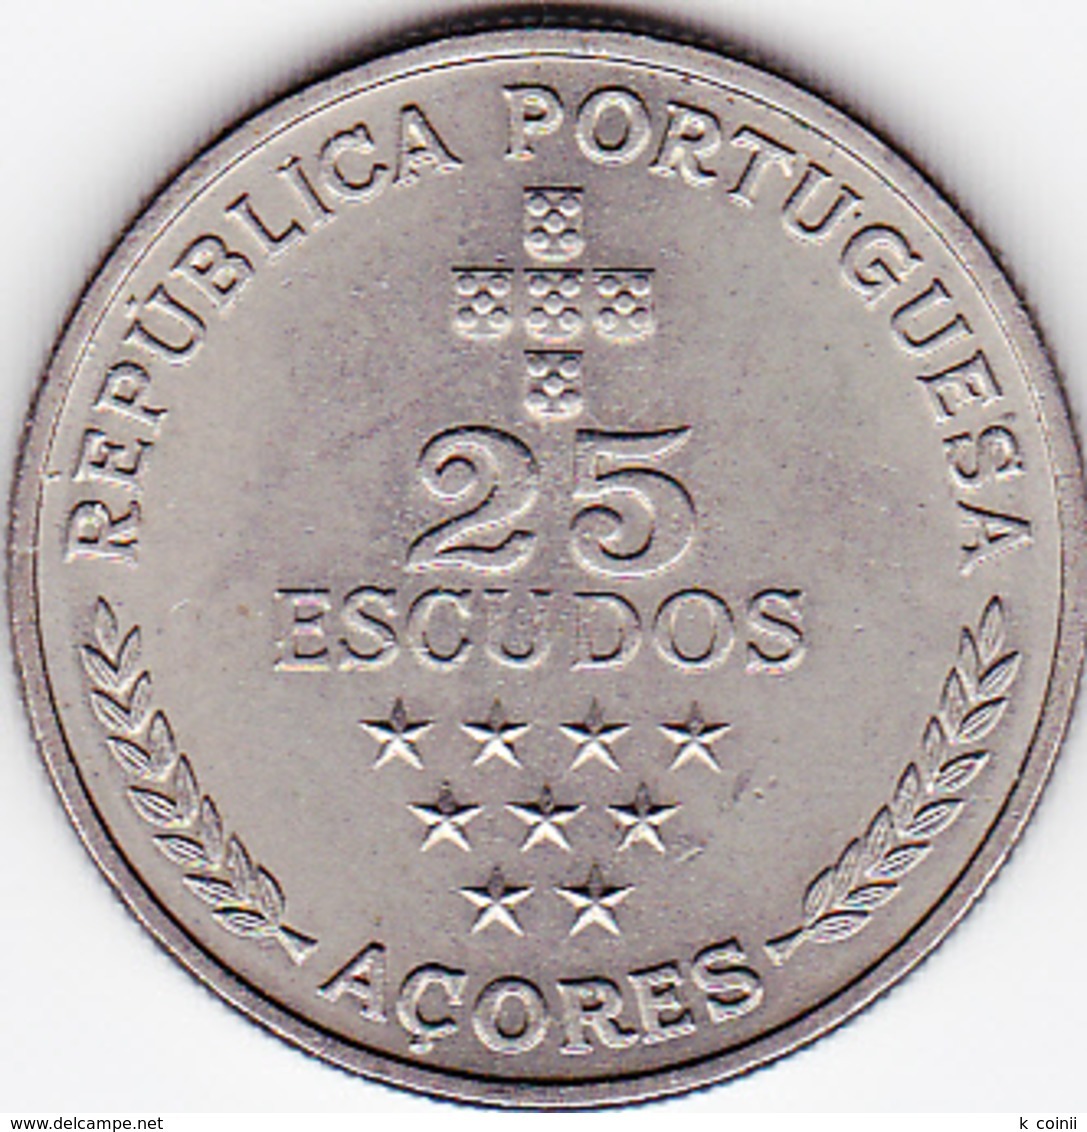 Azores - 25 Escudos (25$00) 1980 Regional Autonomy - Azores